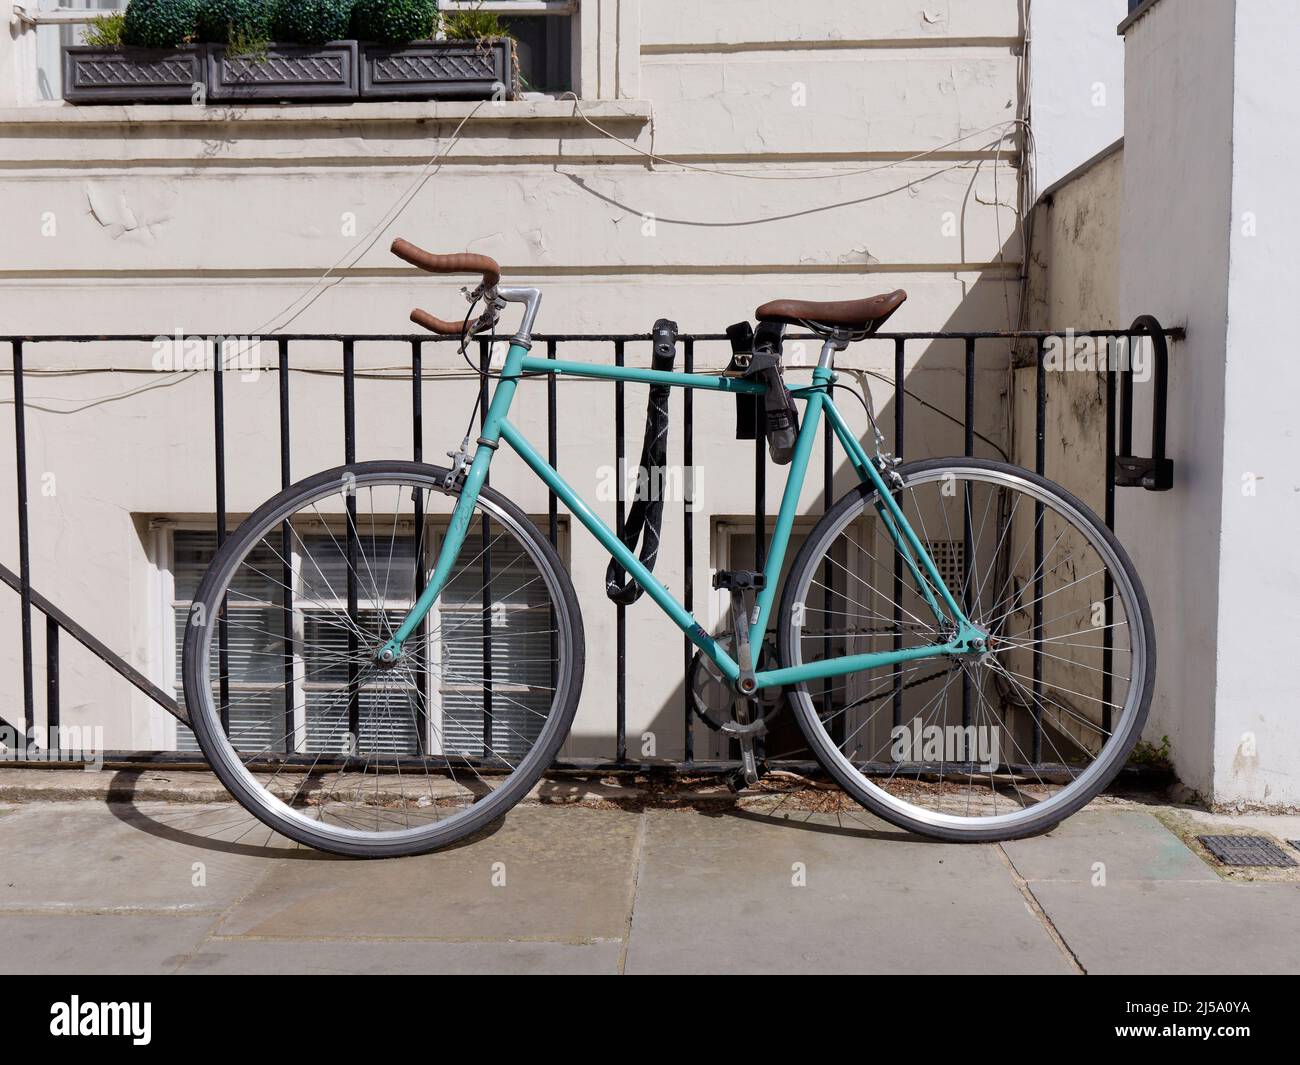 Londres, Grand Londres, Angleterre, avril 09 2022 : cycle bleu pâle avec siège marron et poignées chaînées aux rails d'une maison. Banque D'Images